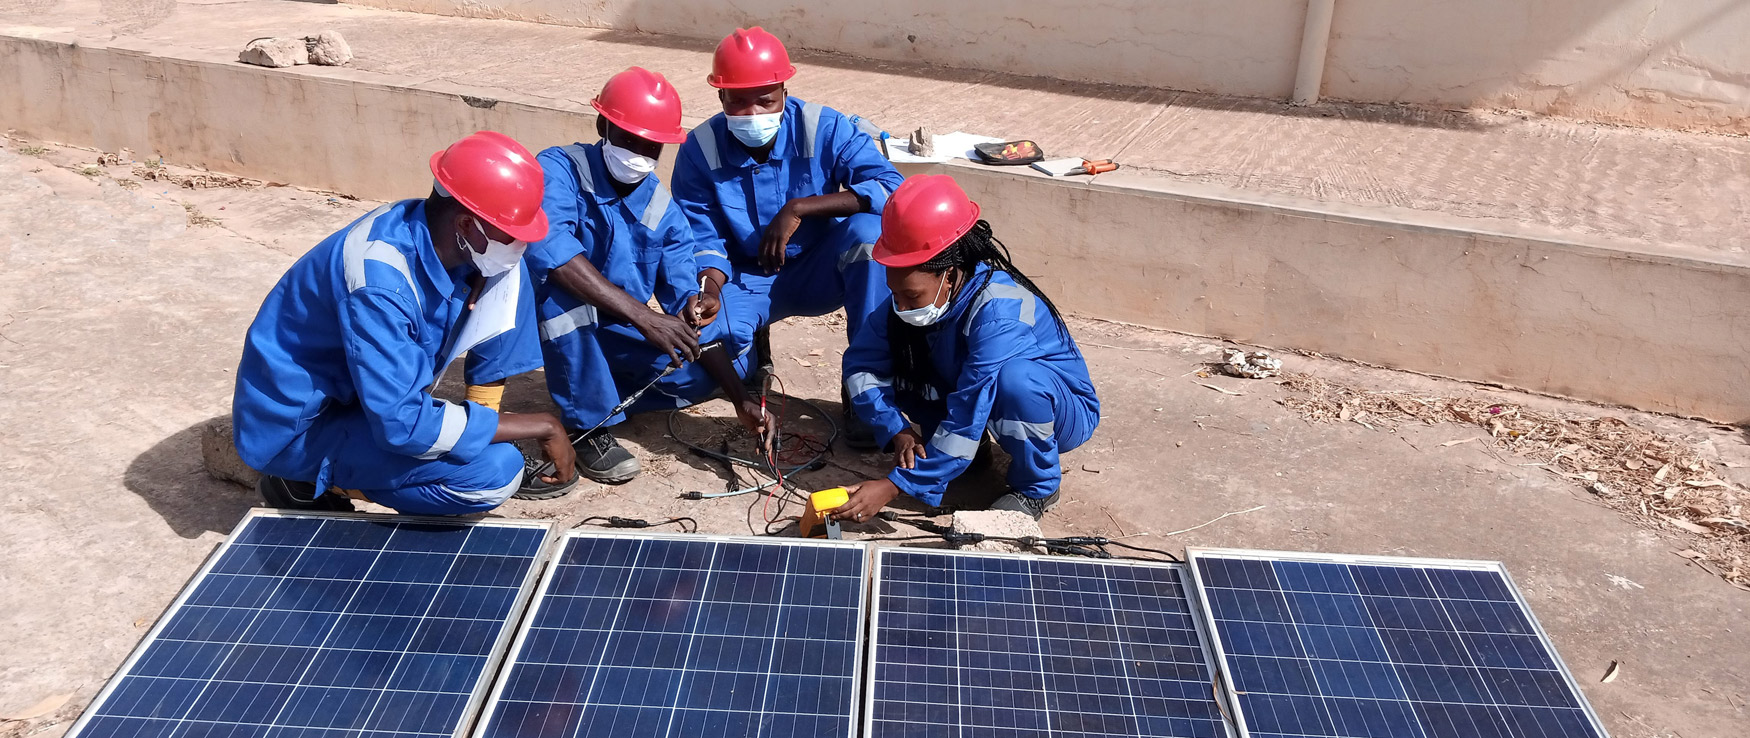 Bild: Arbeiter schließen Solarpanel an